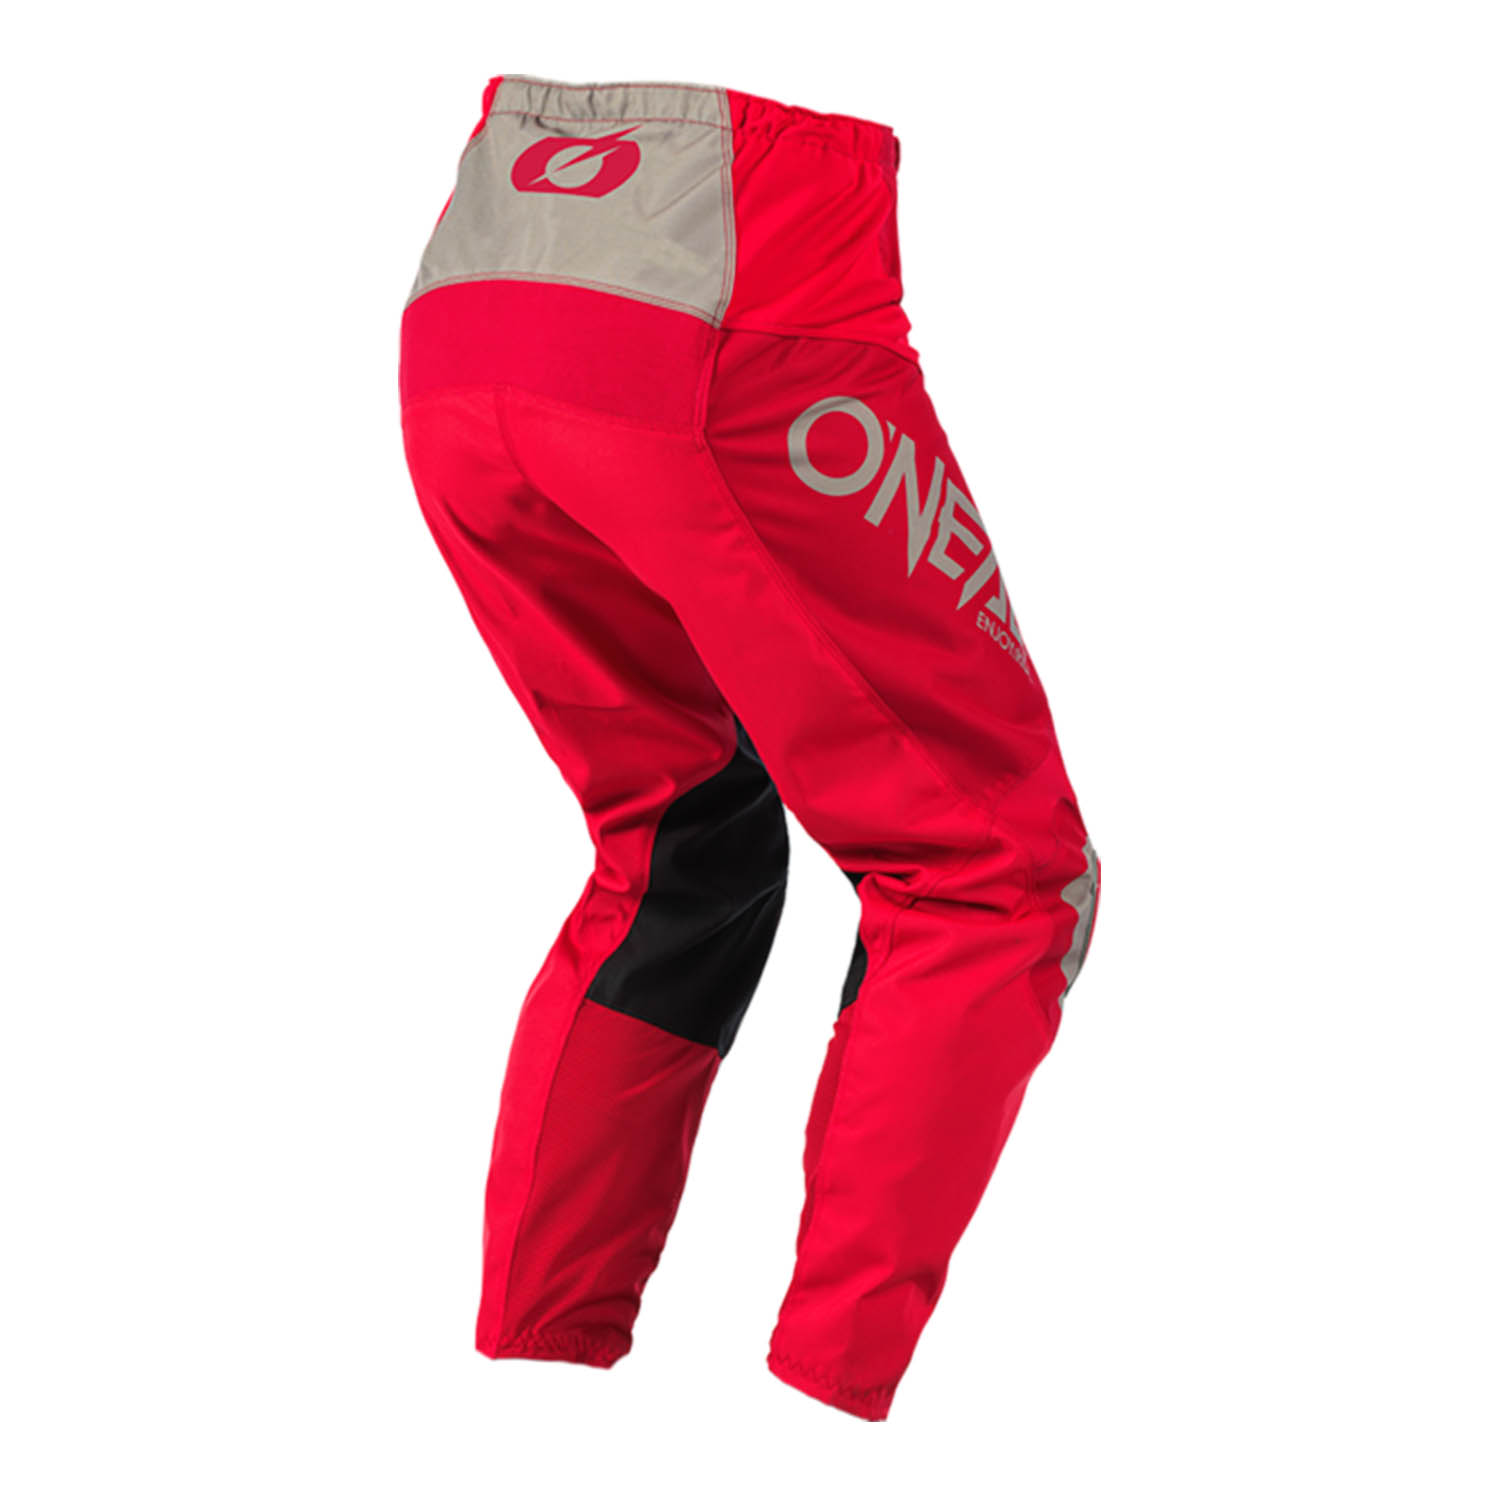 Штаны для мотокросса O'NEAL MATRIX PANTS RIDEWEAR красно-серого цвета, вид сзади купить по низкой цене